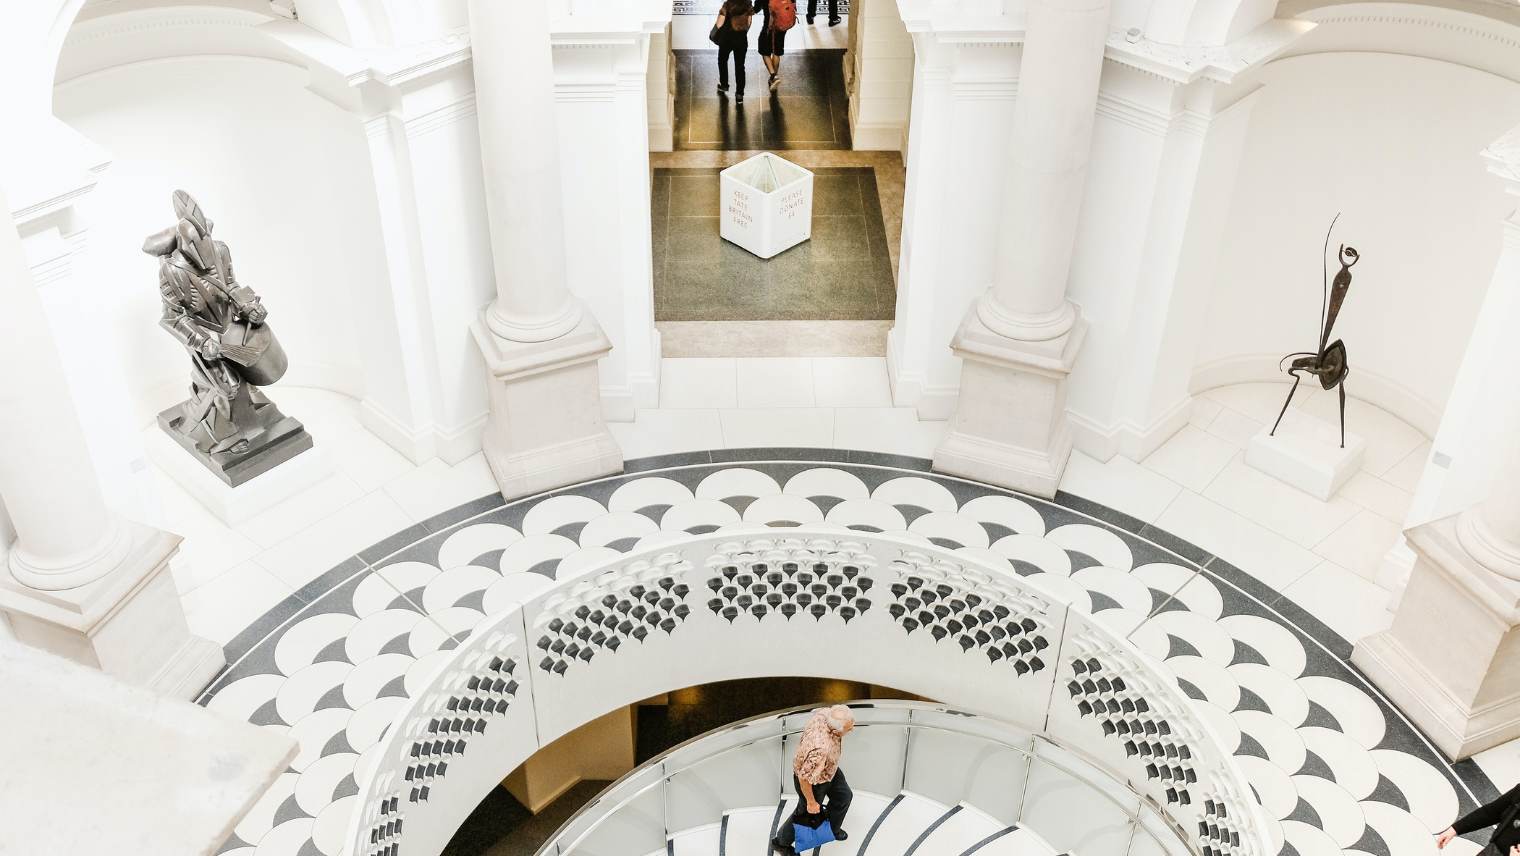 Inside Tate Britain